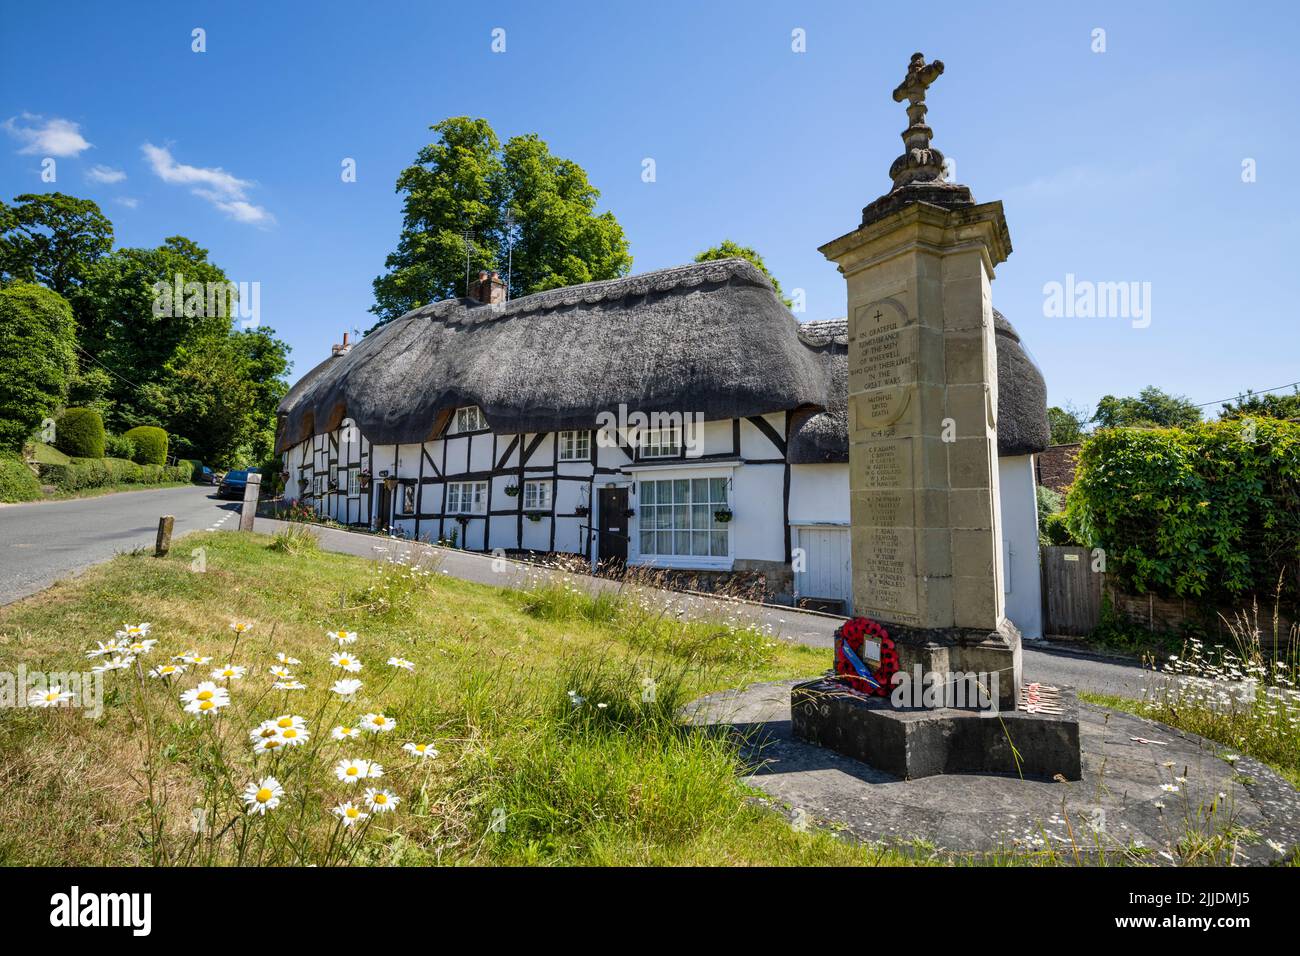 Chalets de chaume et le mémorial de guerre dans la place du village, Wherwell, Test Valley, Hampshire, Angleterre, Royaume-Uni, Europe Banque D'Images